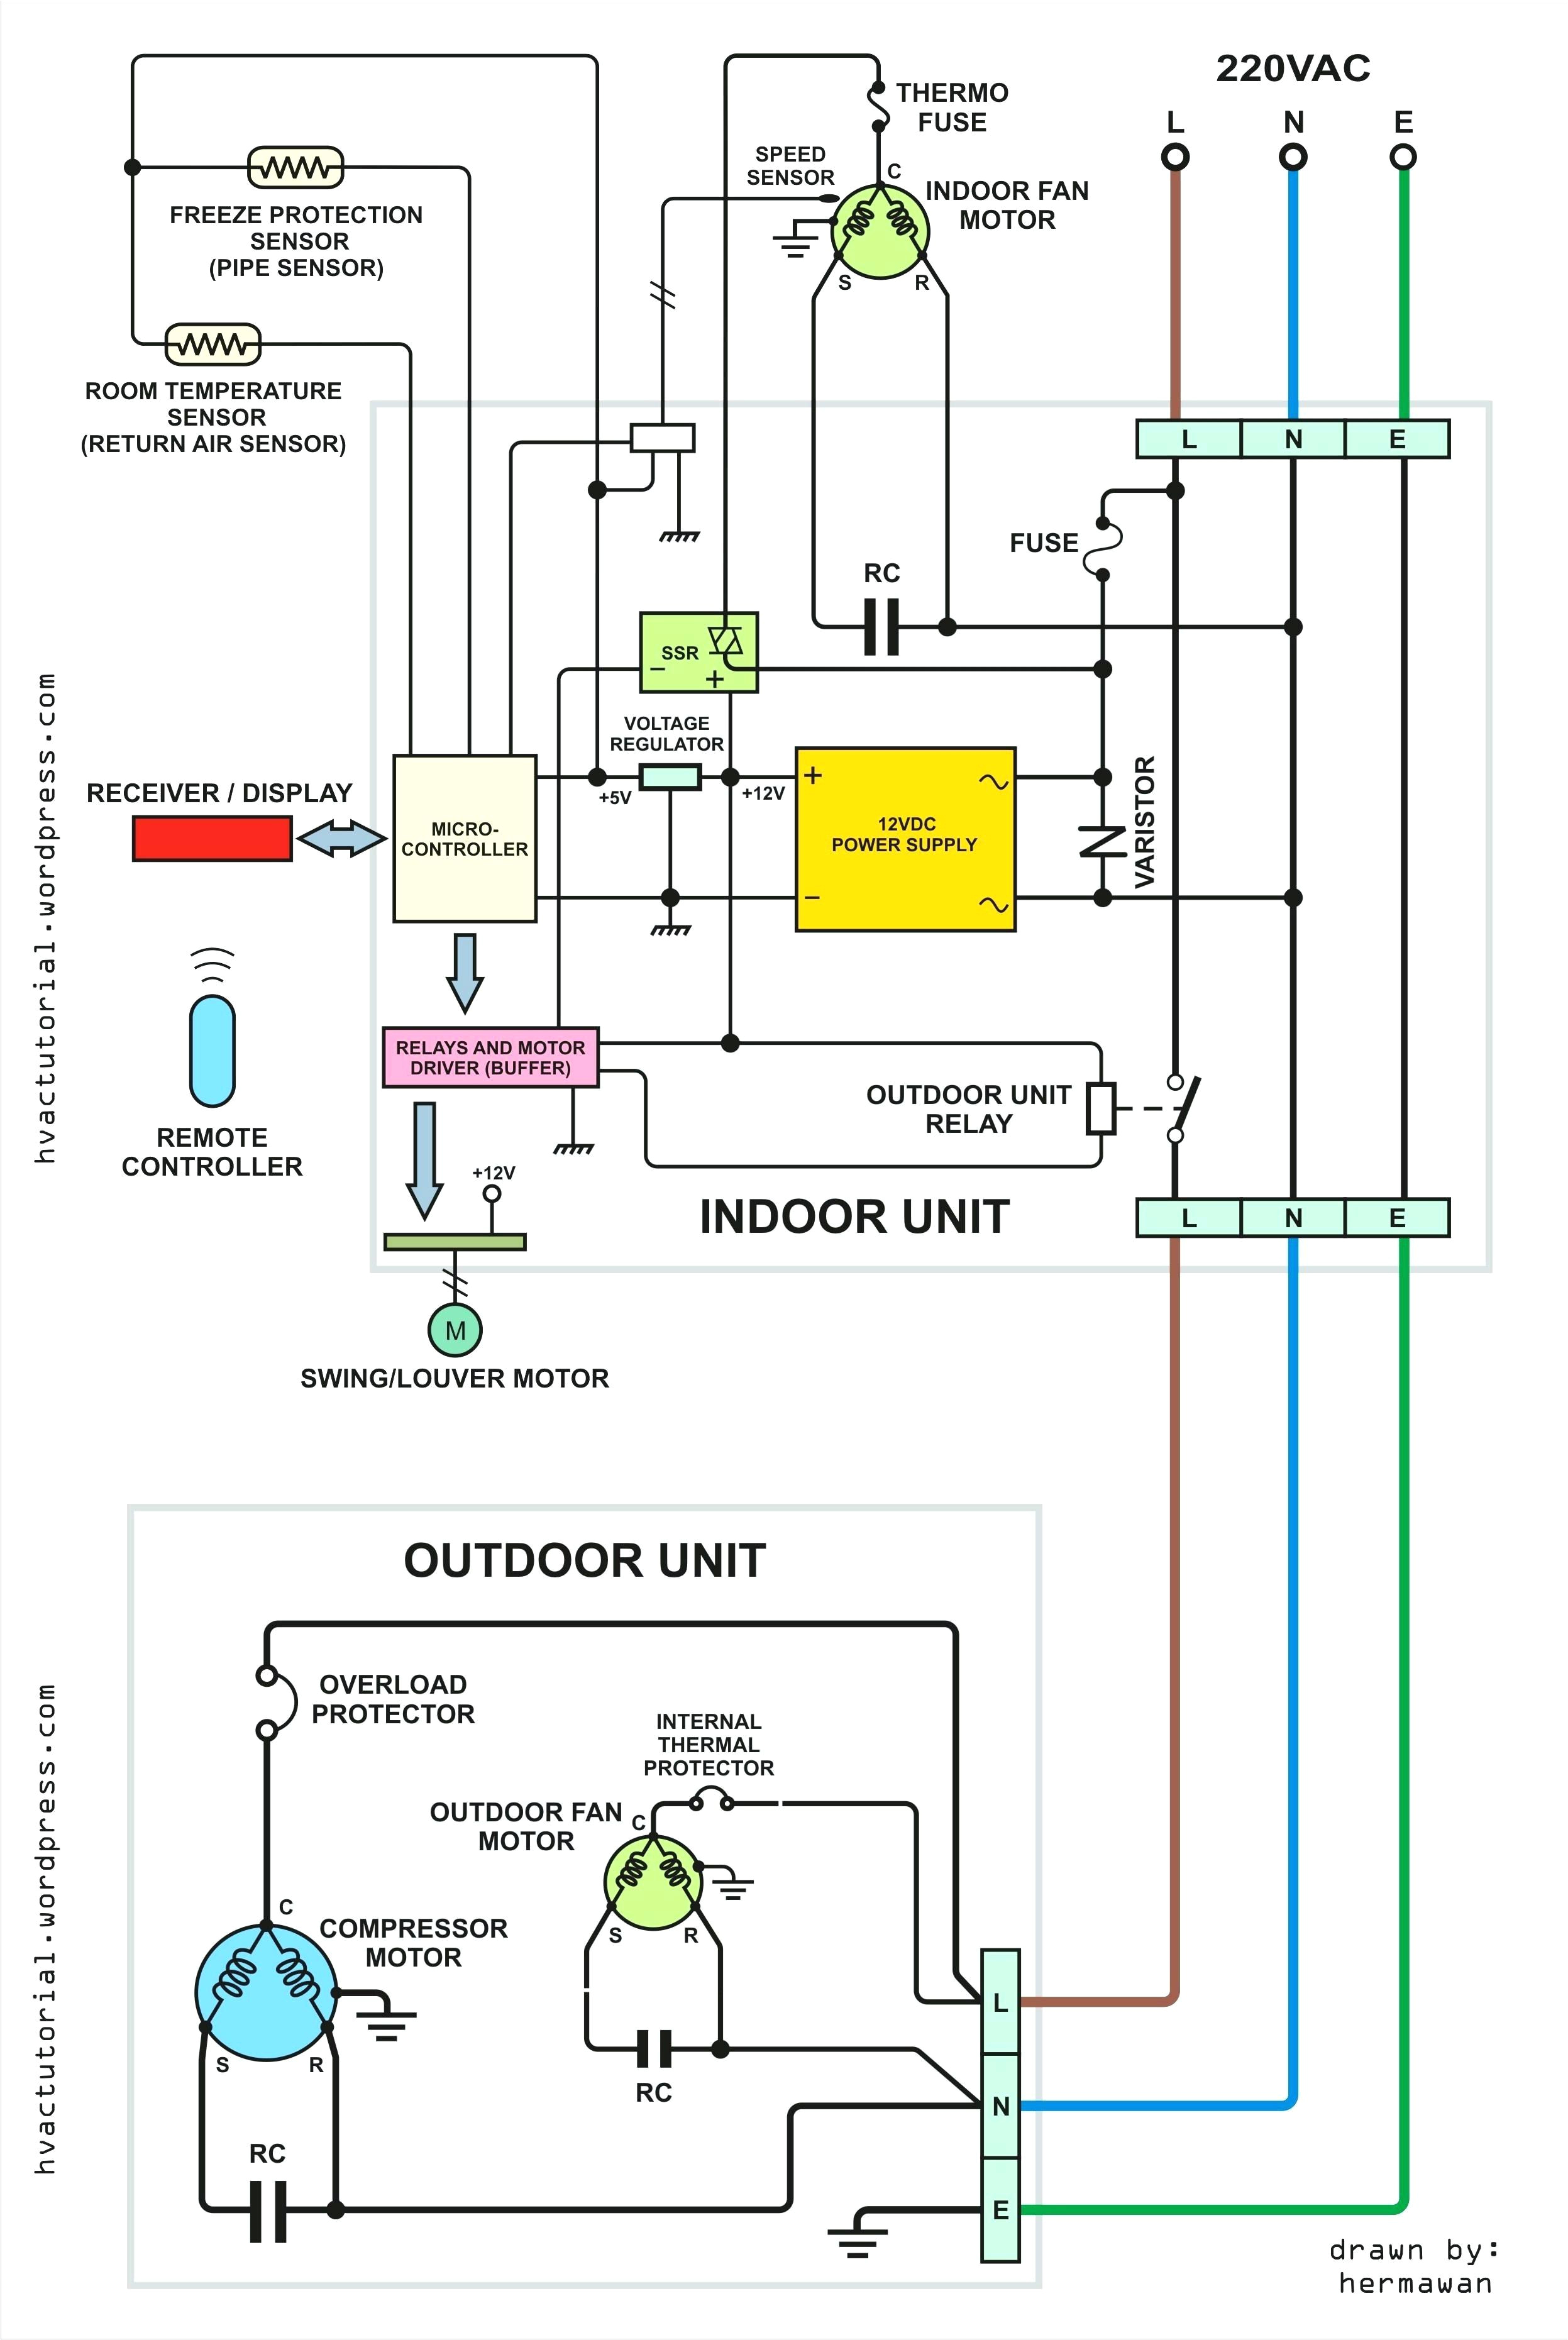 free download wiring schematics wiring diagrams konsult free schematic diagram wiring diagram free download wiring schematics